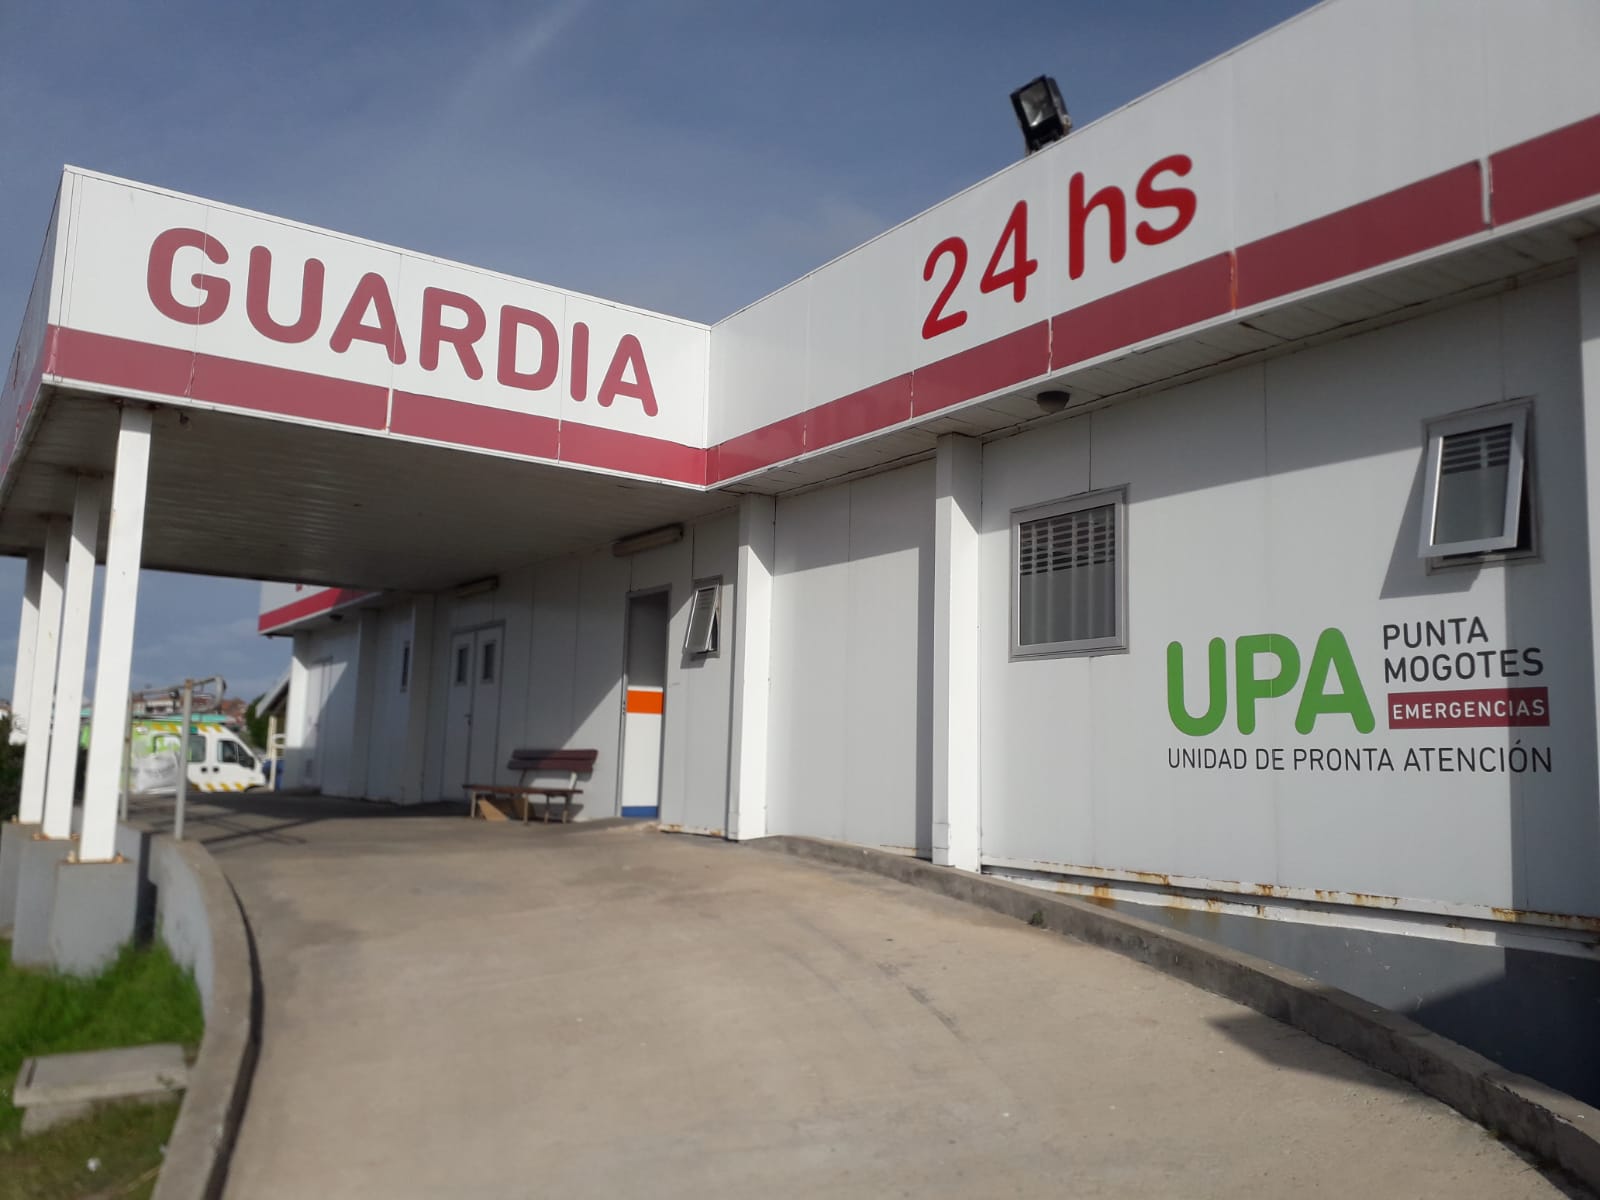 UPA Punta Mogotes: atención de 24 horas y 1.400 personas atendidas en mayo